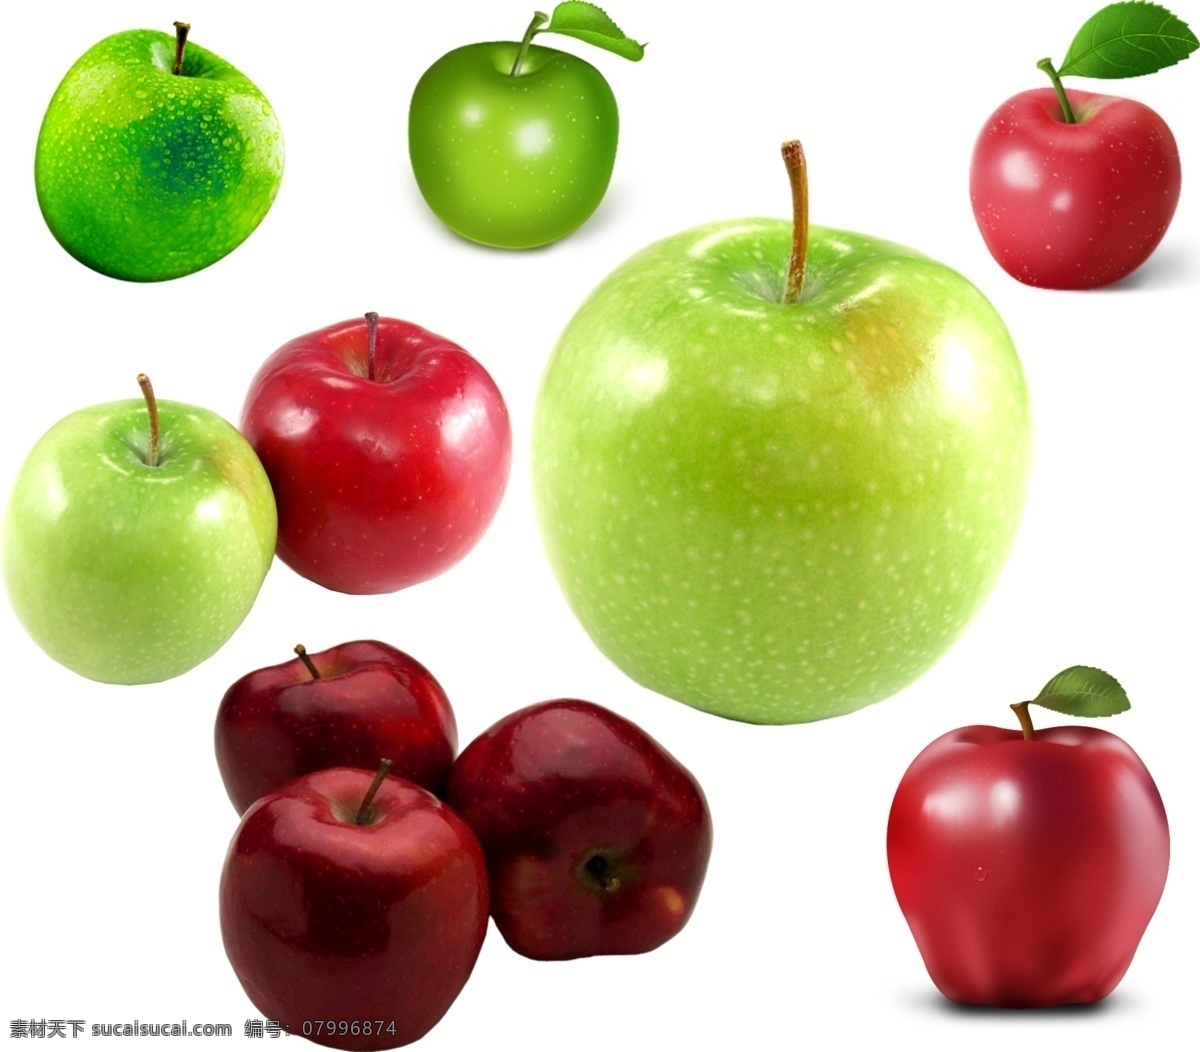 苹果合集 苹果 红苹果 绿苹果 水果 平面素材 分层